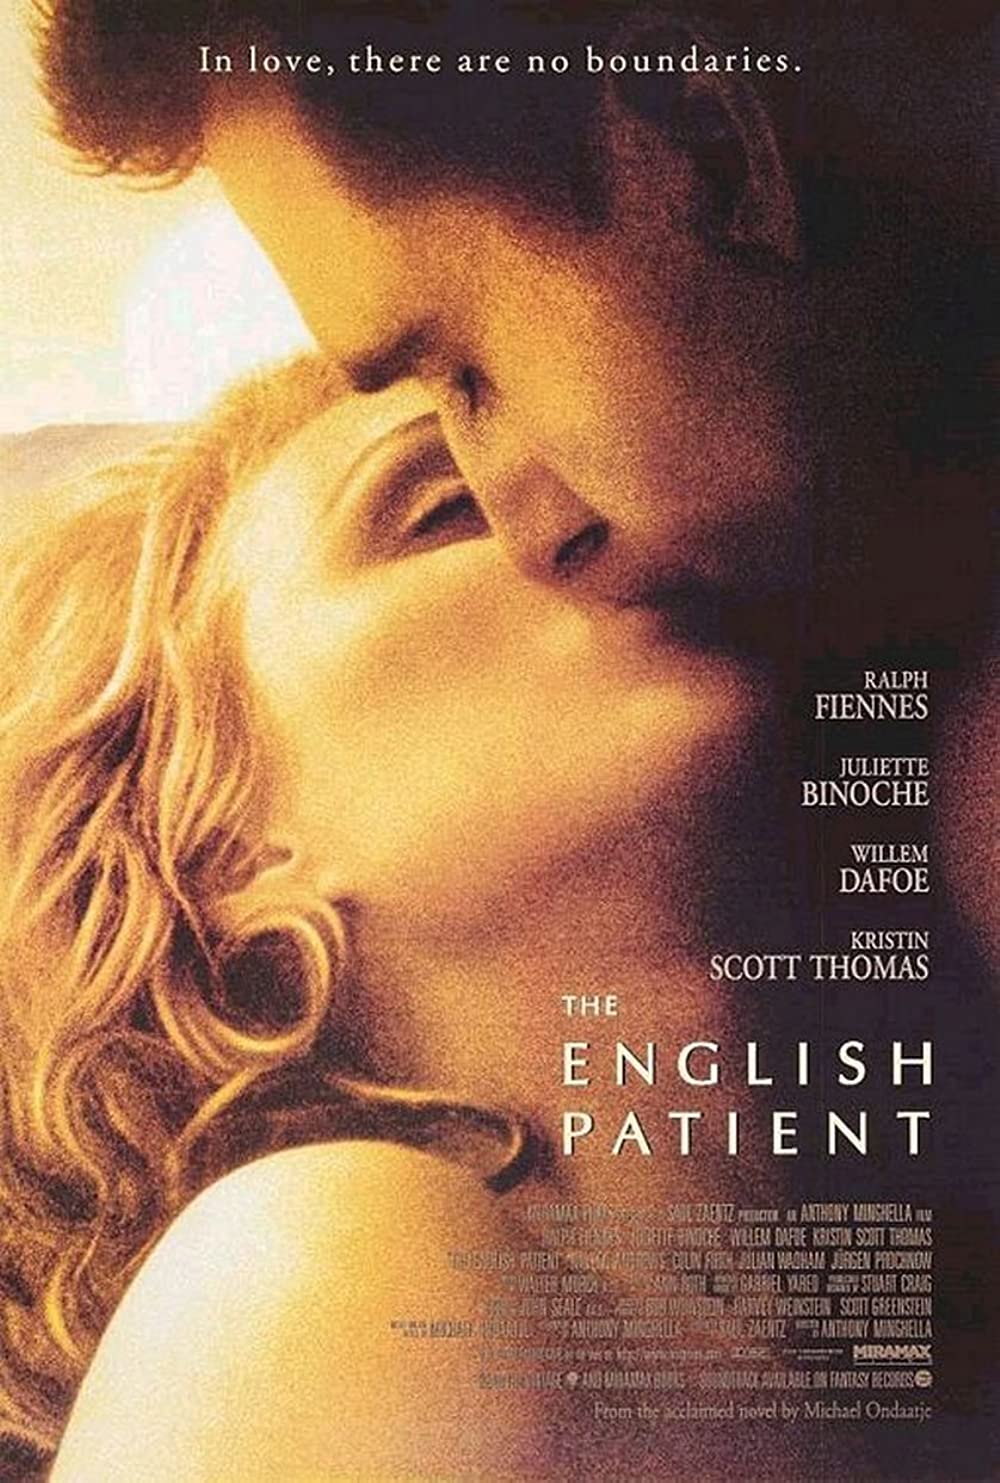 Filmbeschreibung zu Der englische Patient